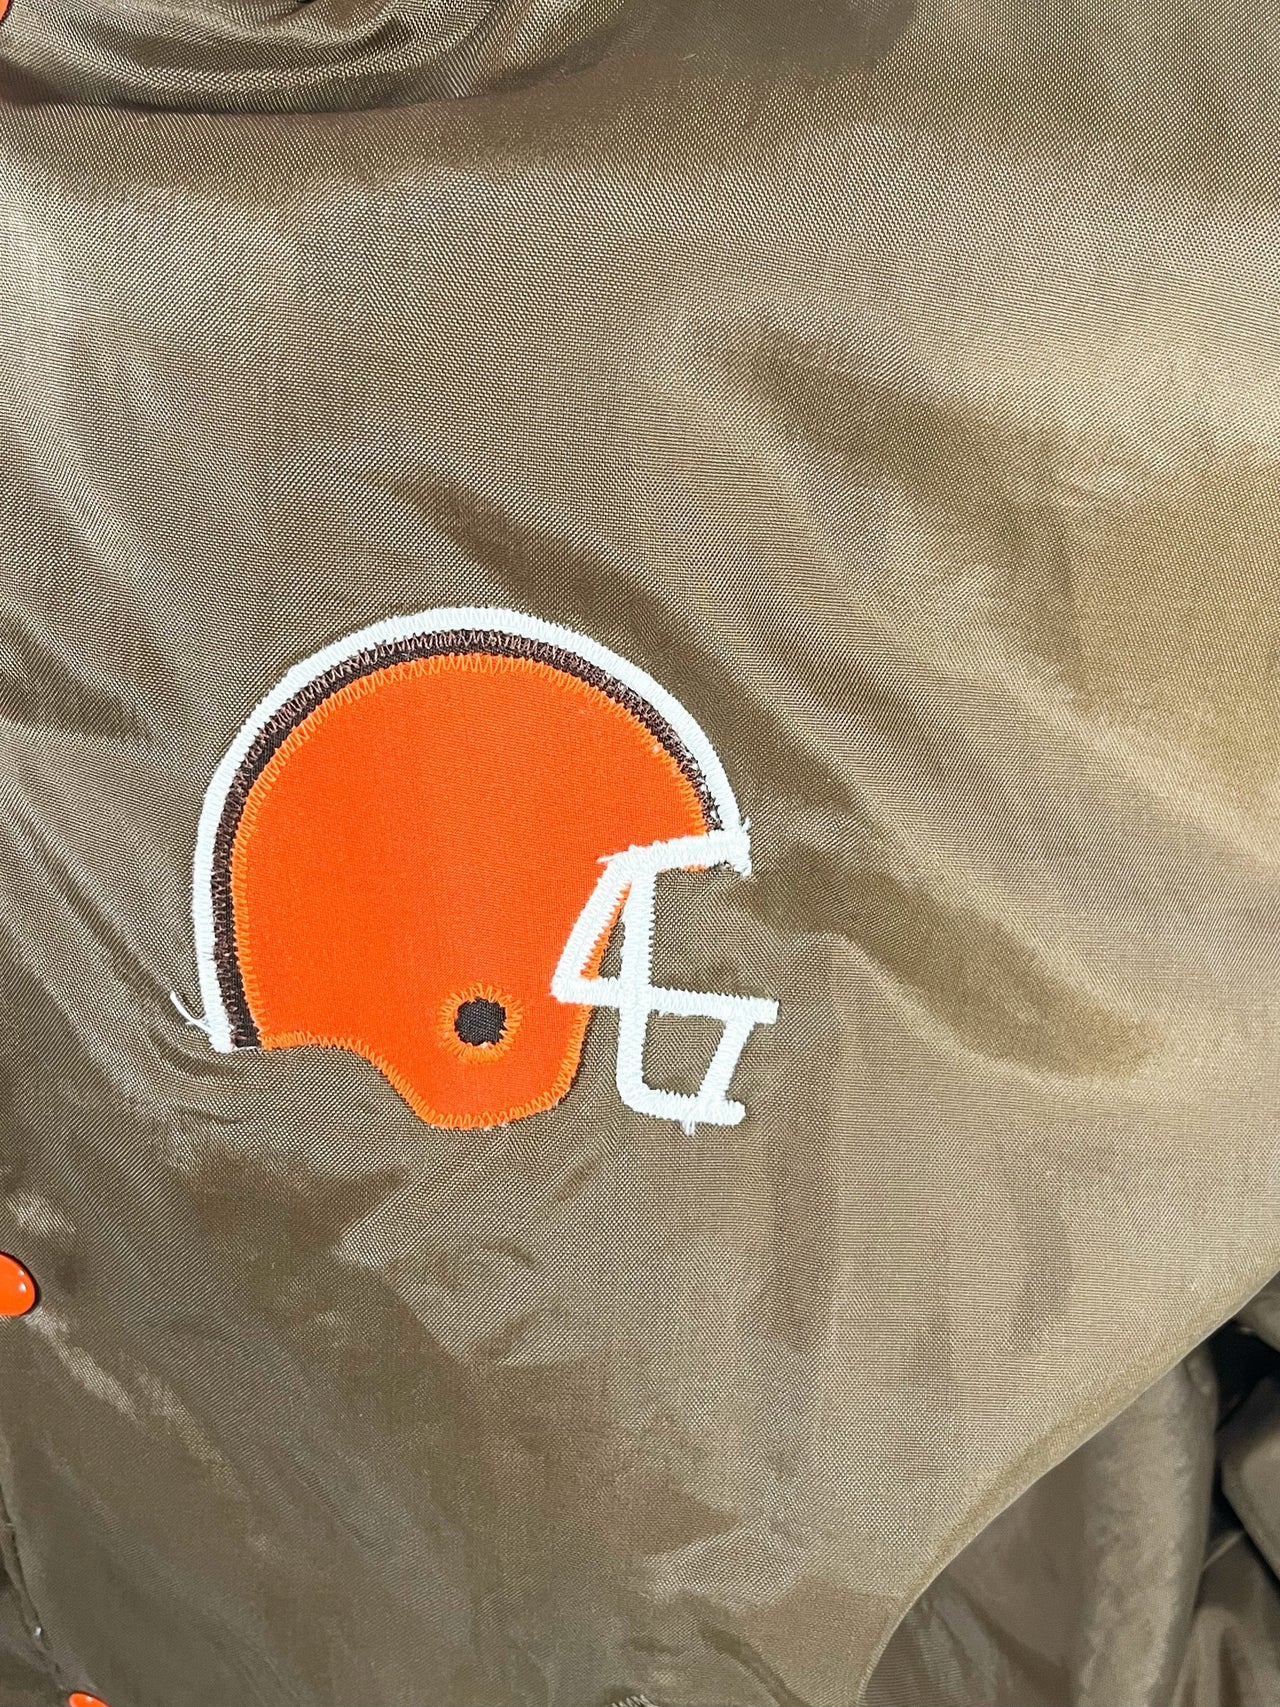 Gameday Grails Jacket Large Vintage Cleveland Browns Jacket